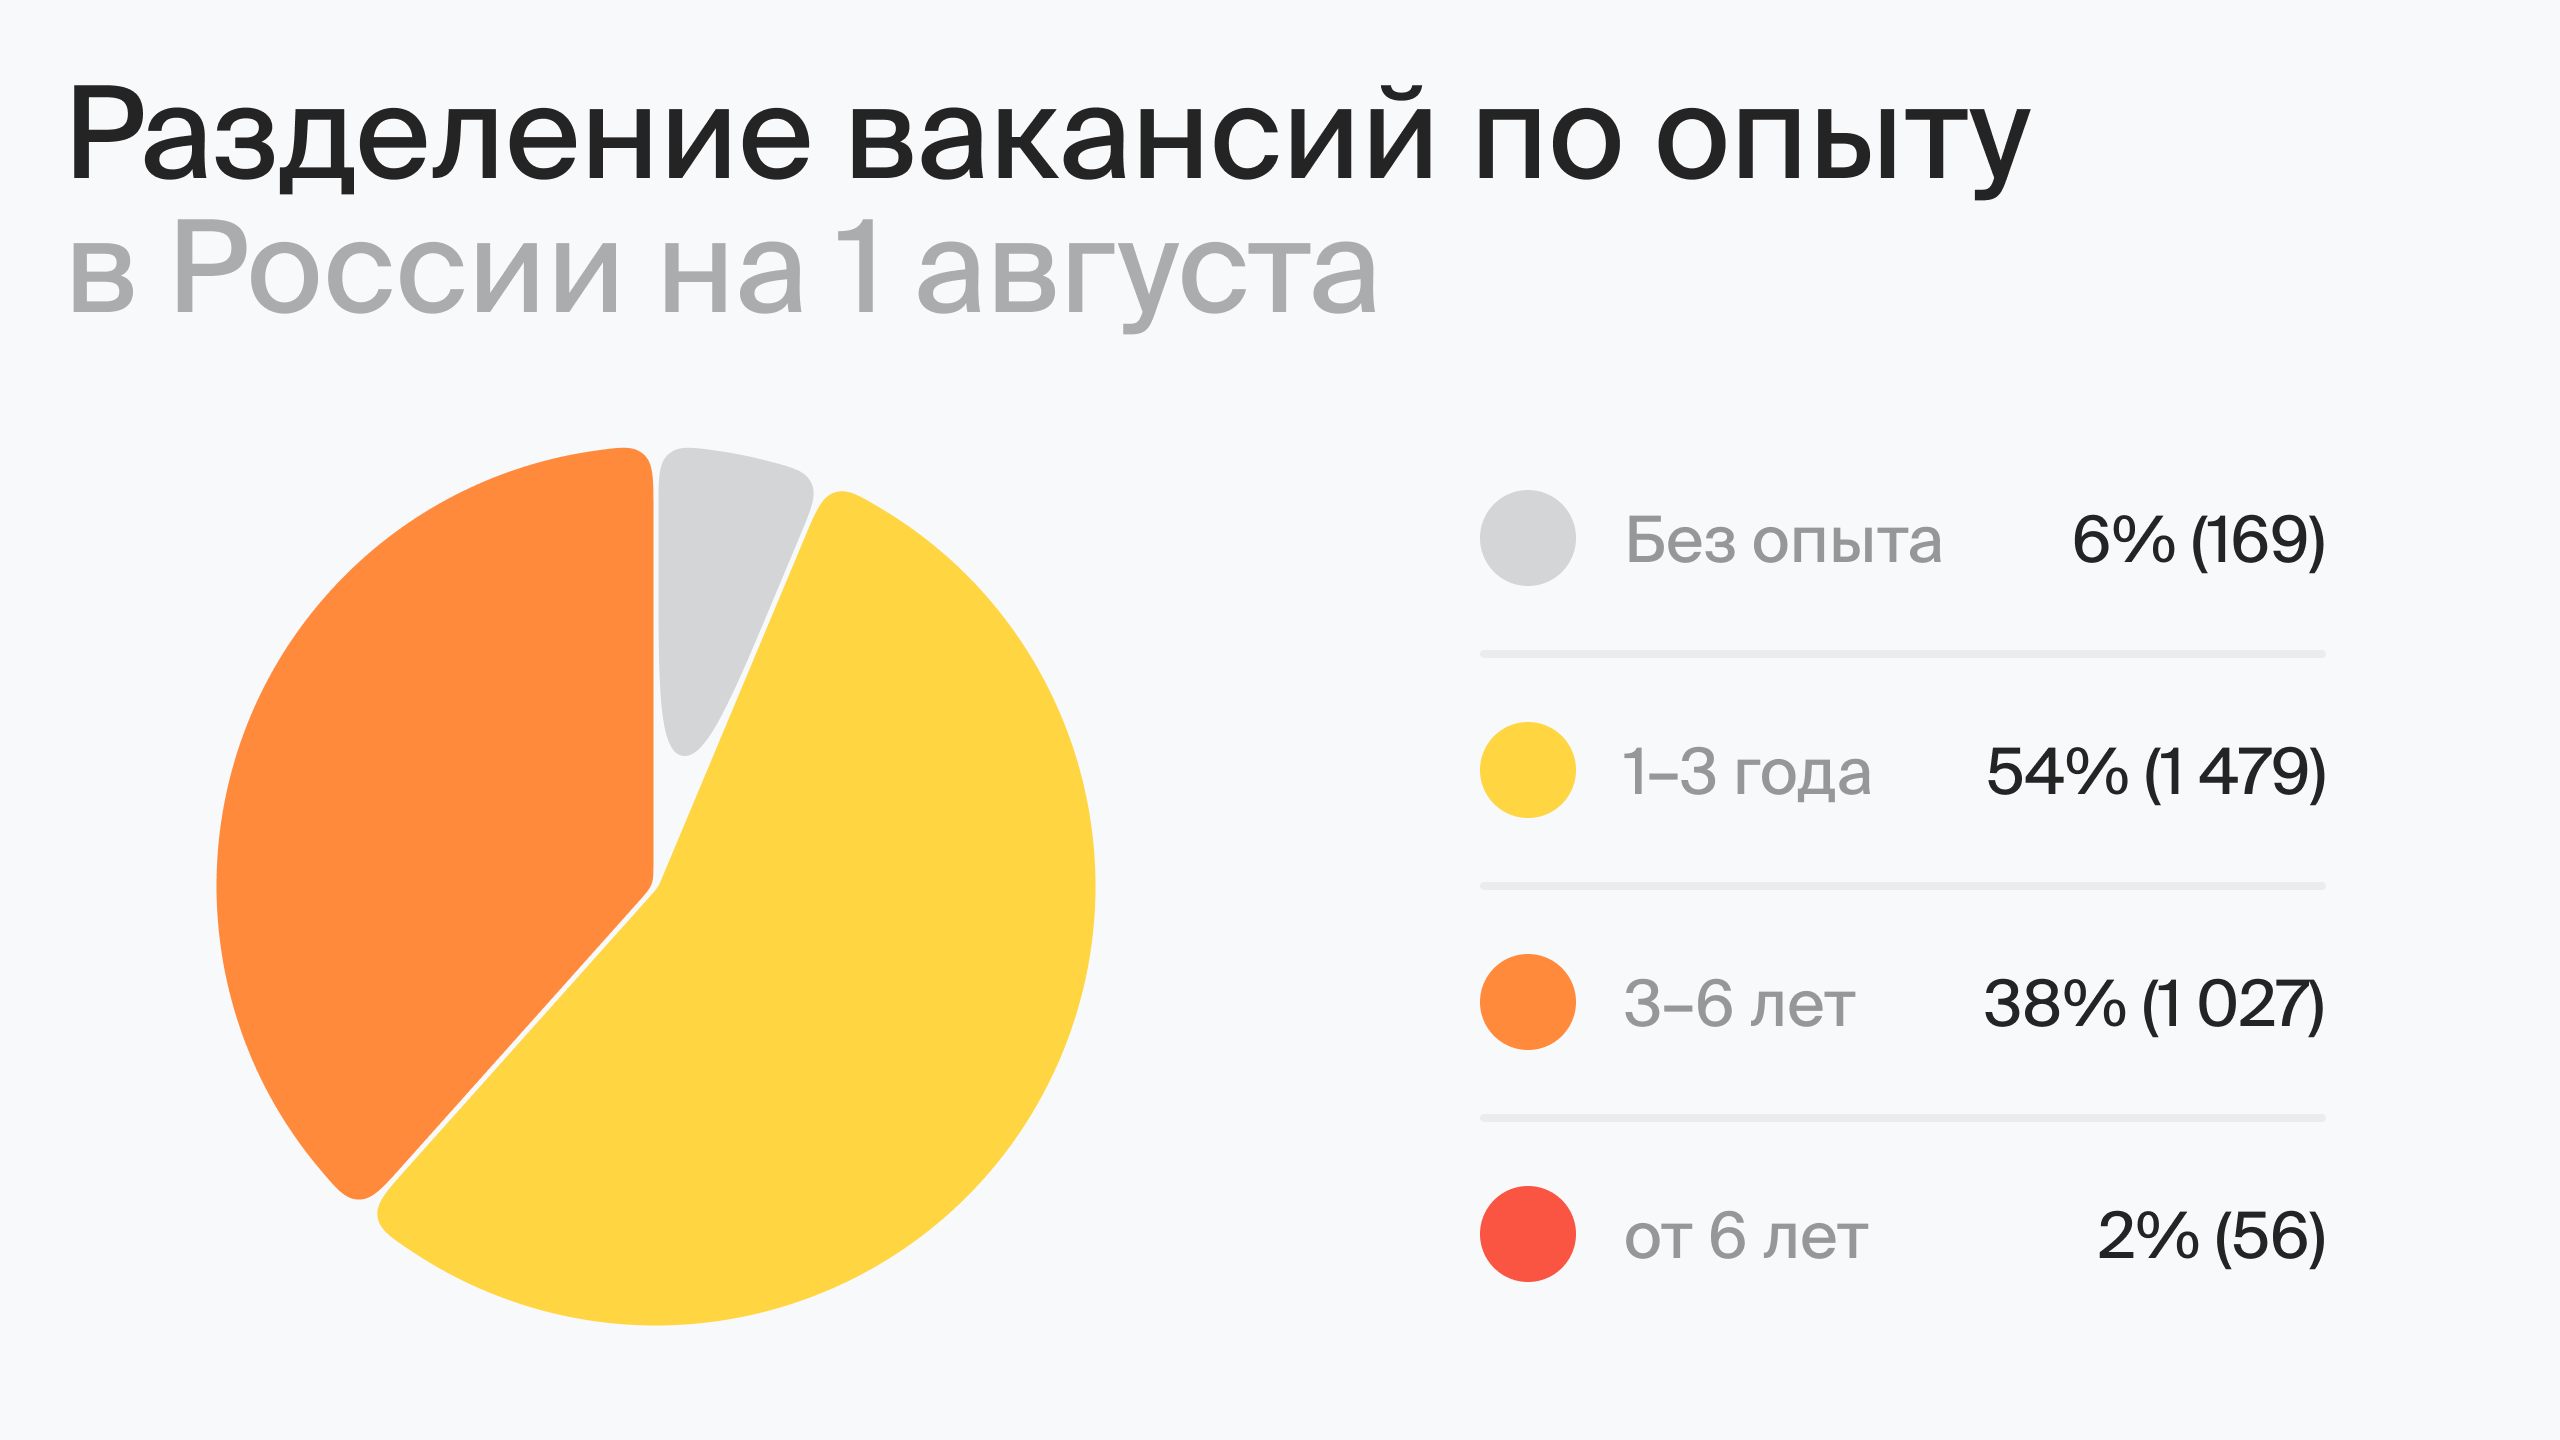 Разделение вакансий по опыту в России на 1 августа (по данным hh.ru)